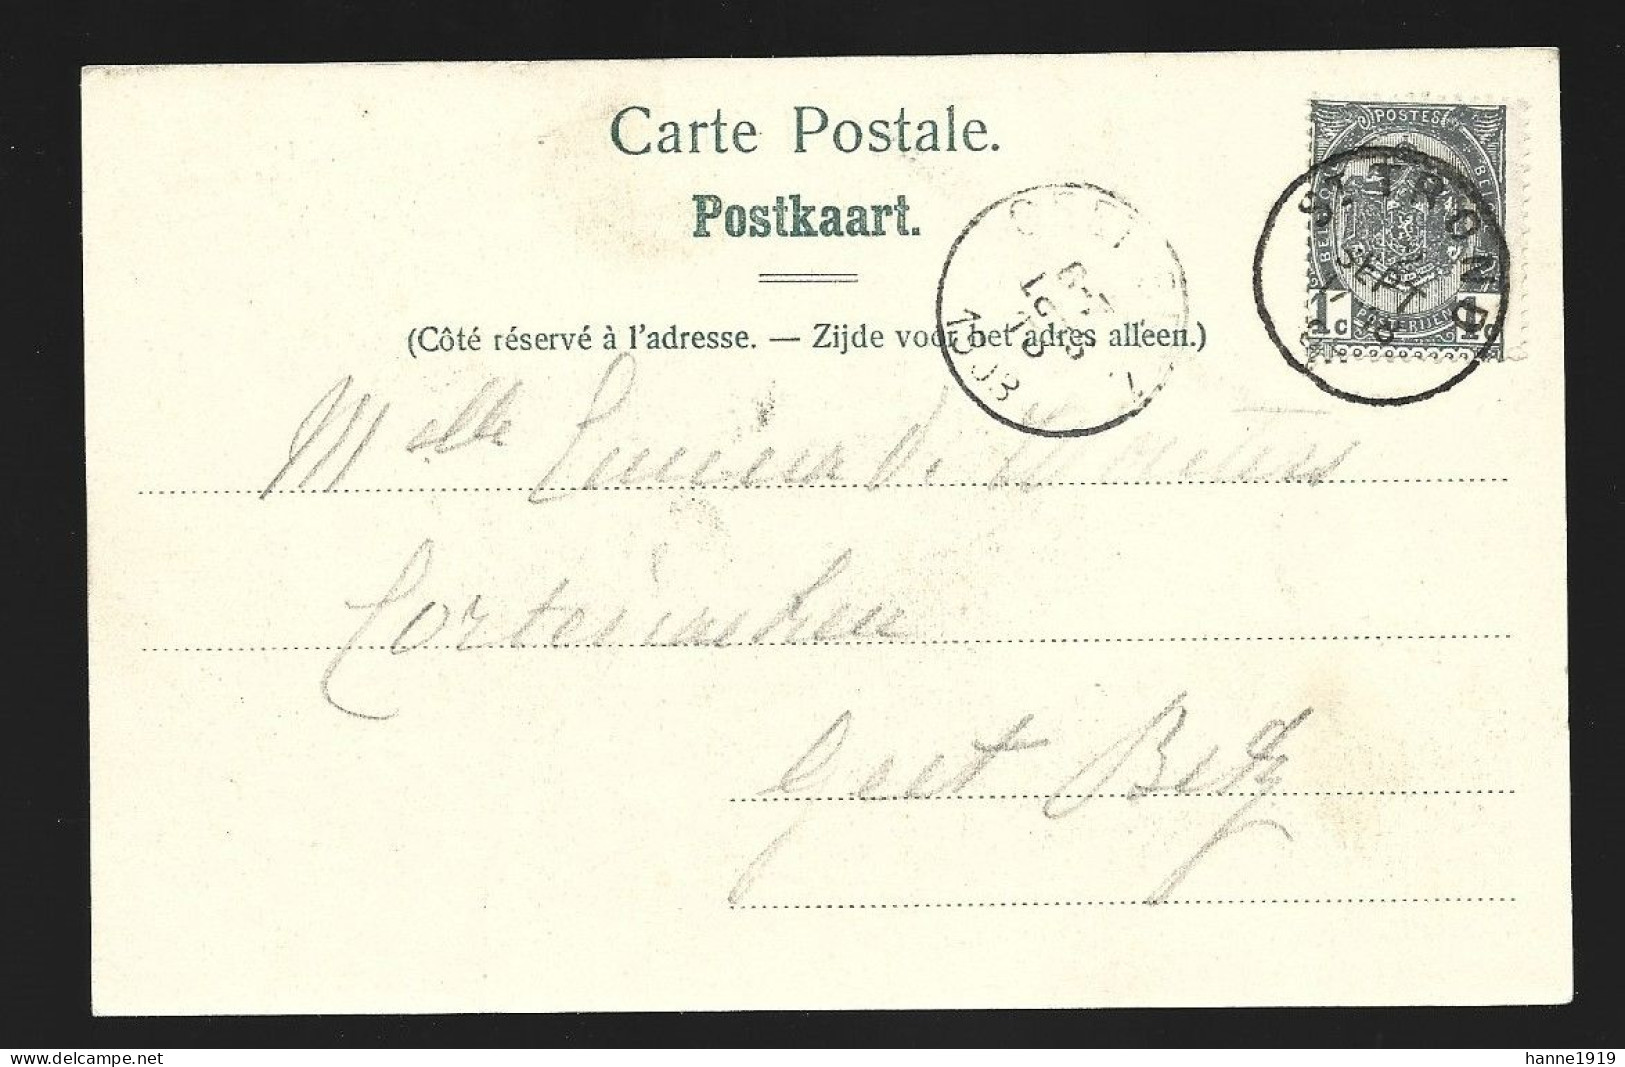 Sint Truiden Le Chateau De Duras Briefstempel 1903 Saint Trond Htje - Sint-Truiden